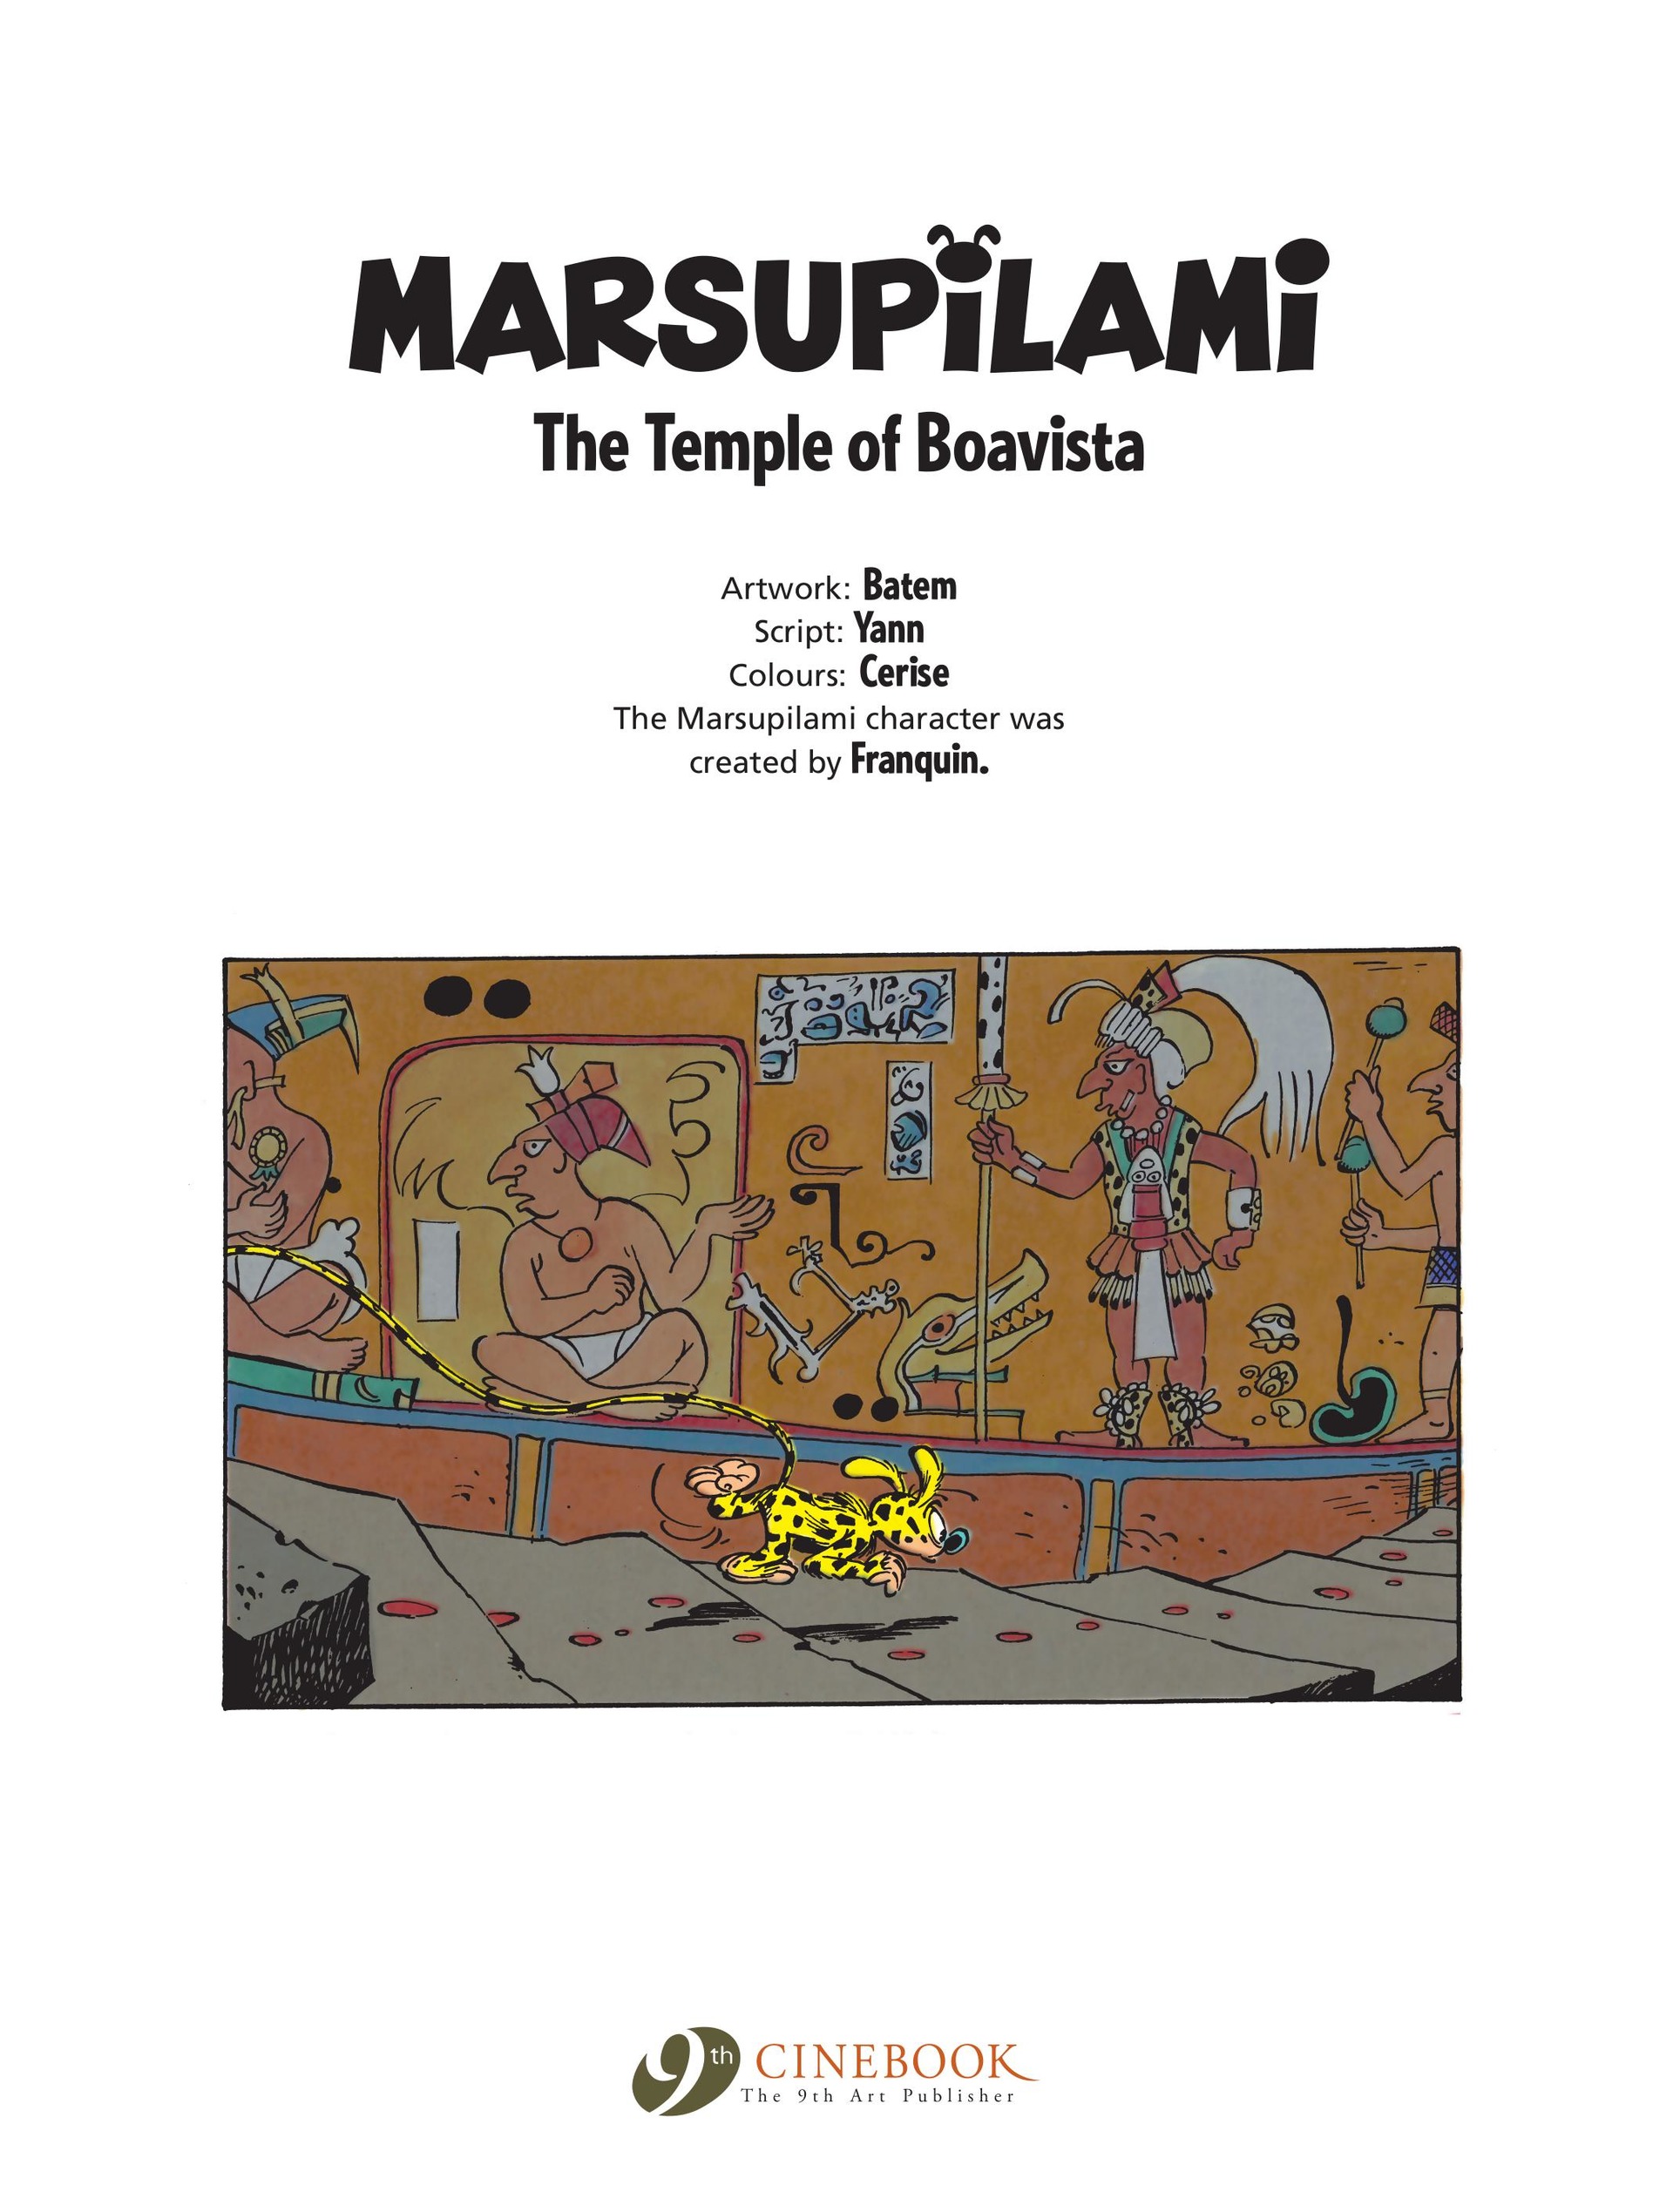 Read online Marsupilami comic -  Issue #8 - 3